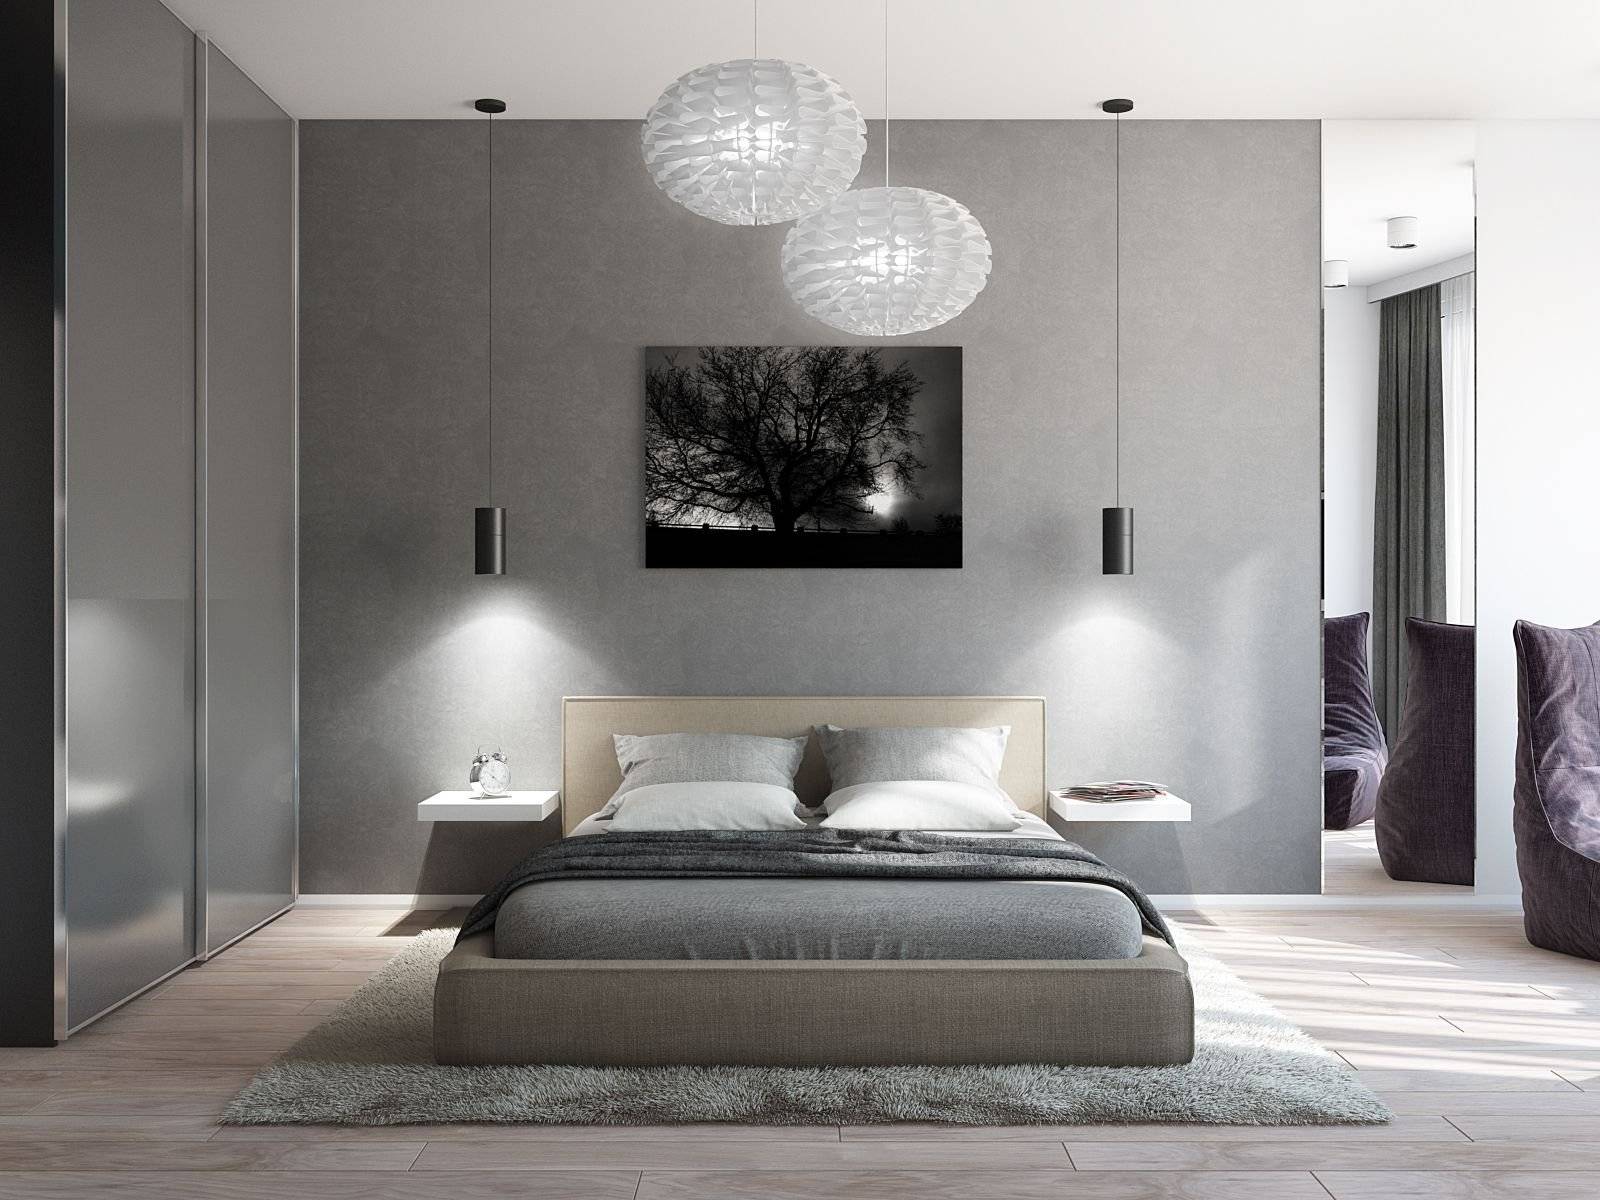 Спальня в стиле минимализм: фото в интерьере